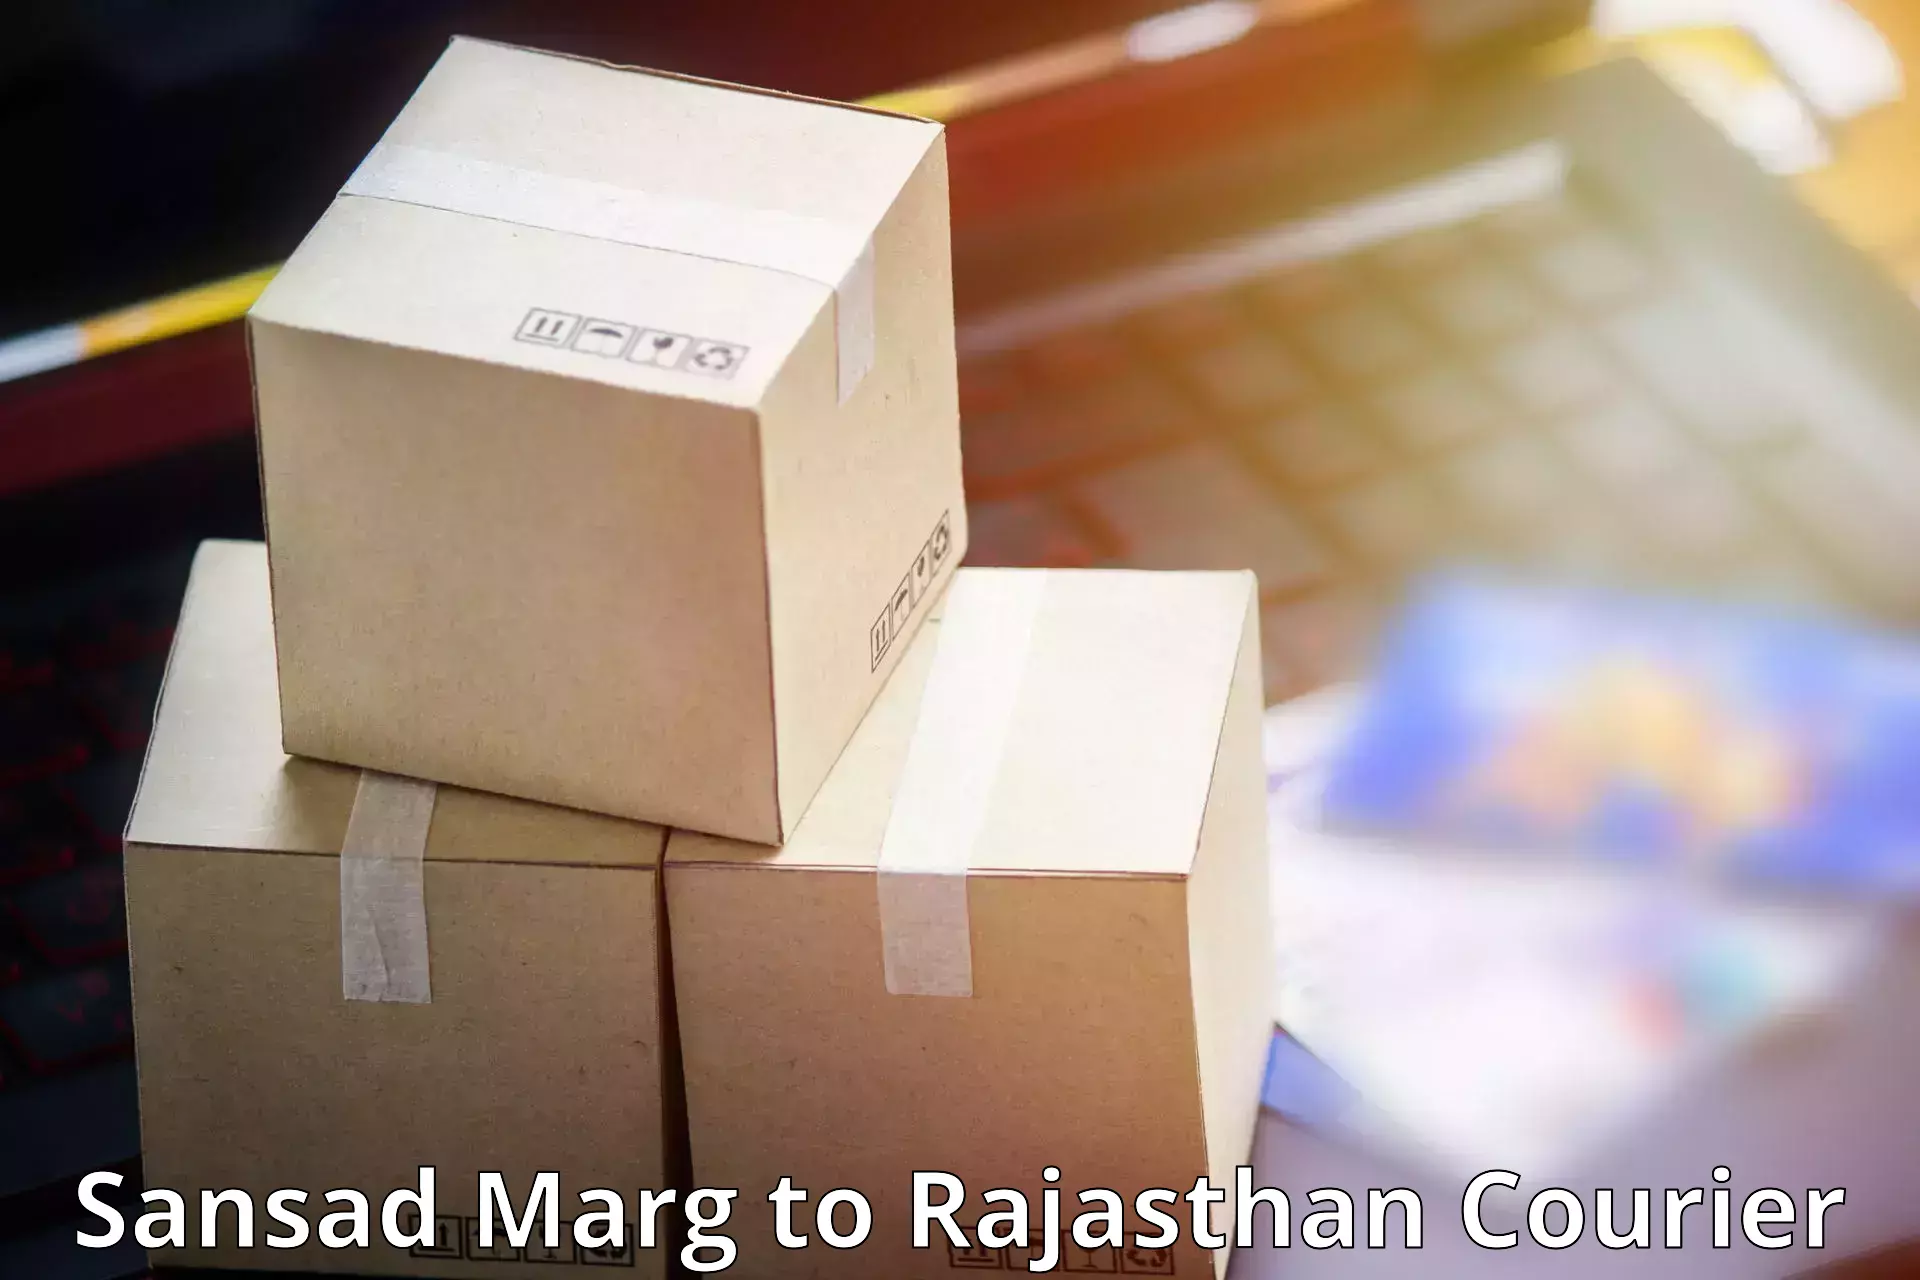 Expedited shipping methods Sansad Marg to Kishangarh